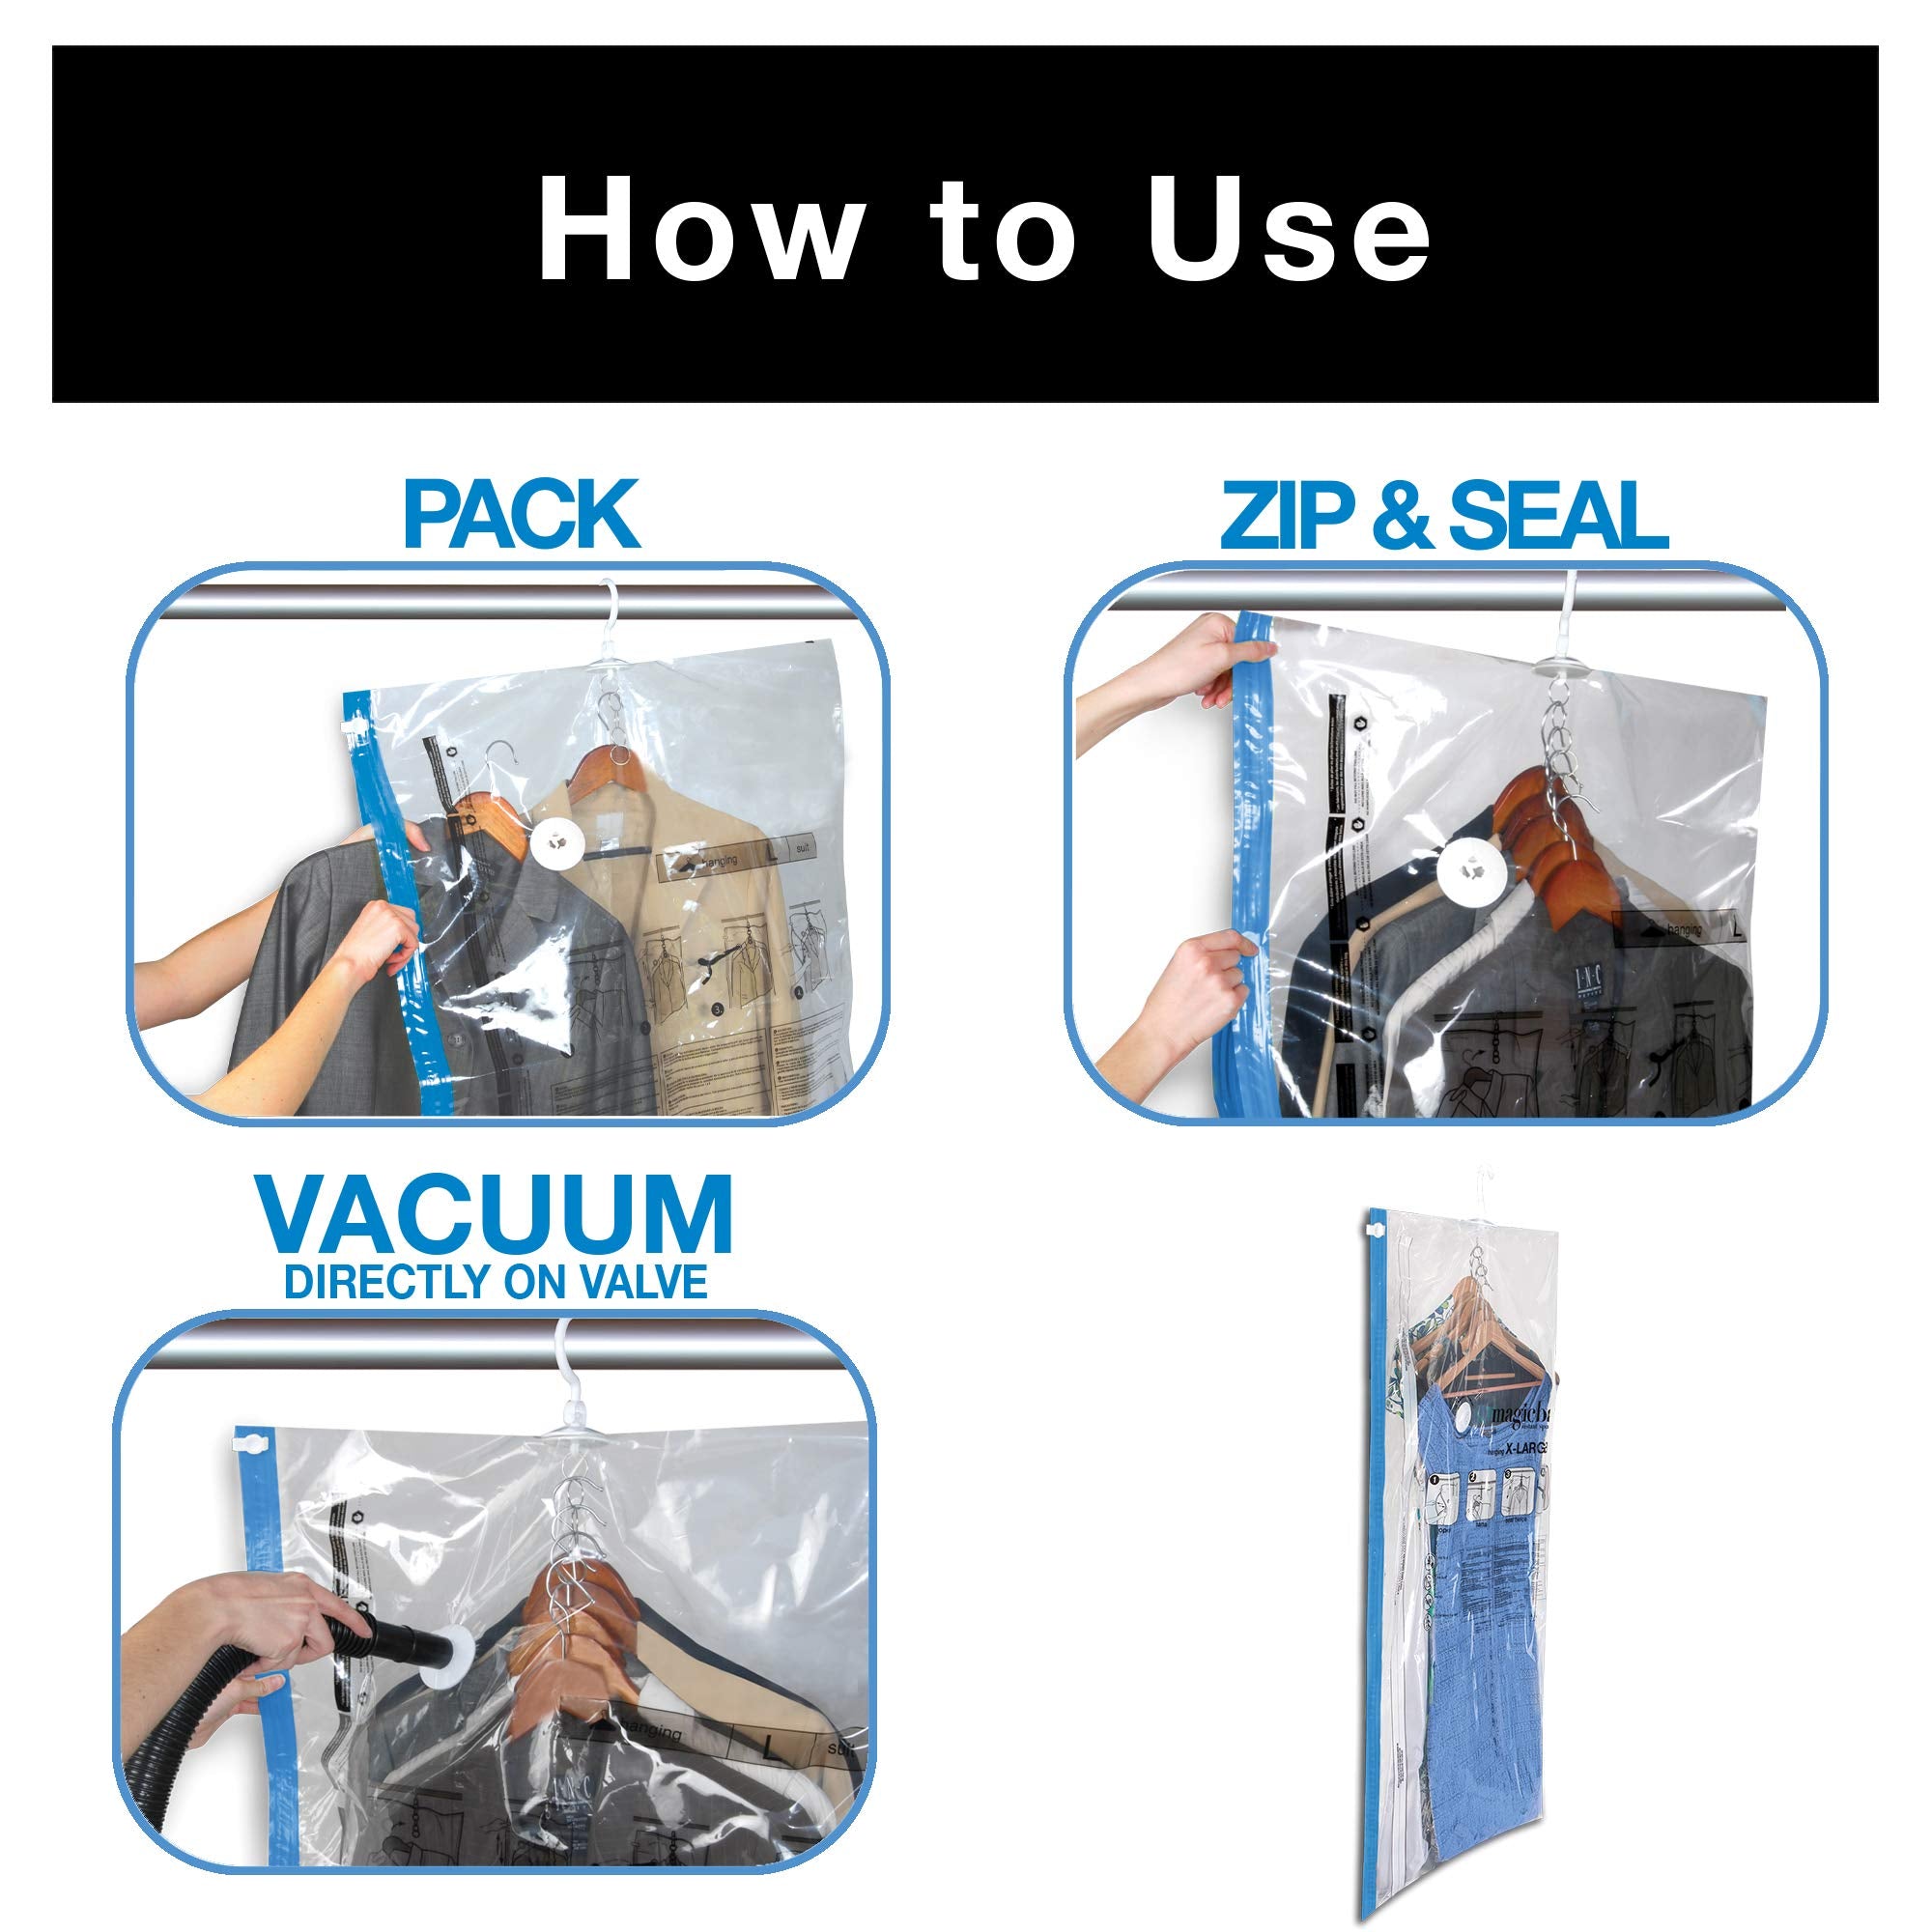 Hanging Garment Vacuum Bag